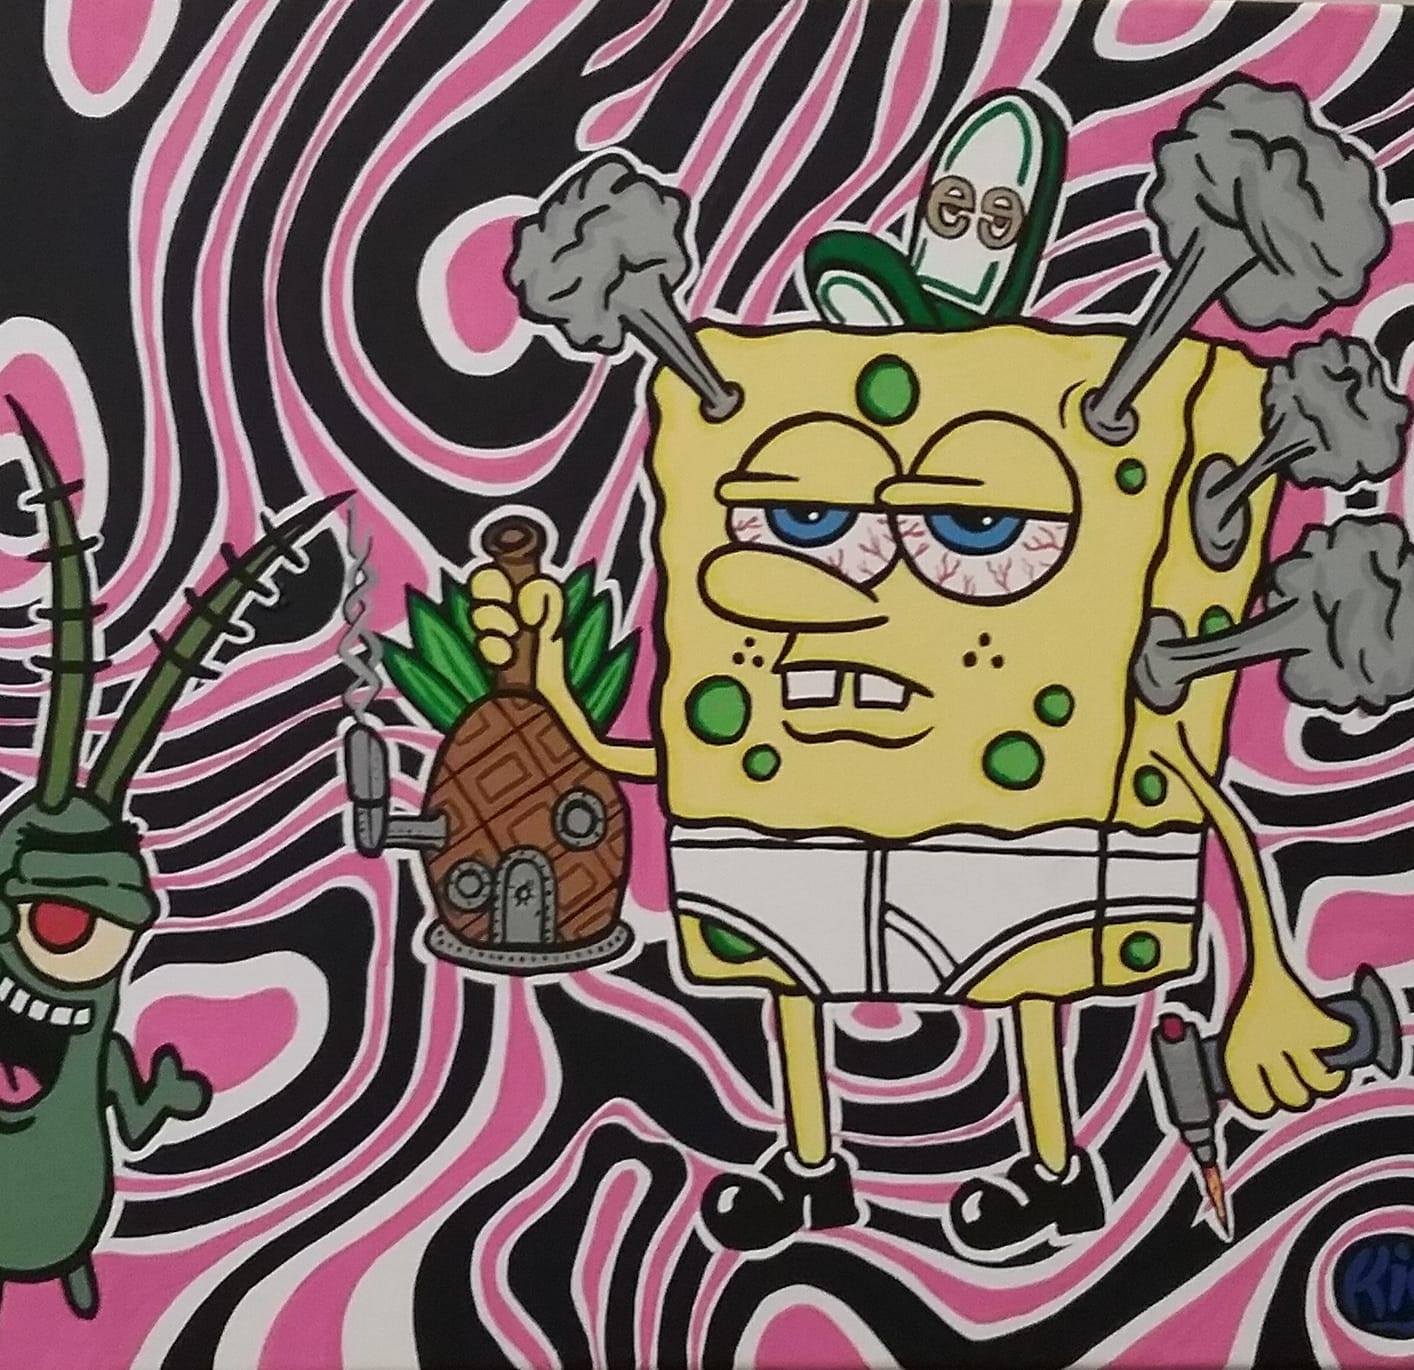 🔥 [20+] Spongebob Drip Wallpapers | WallpaperSafari